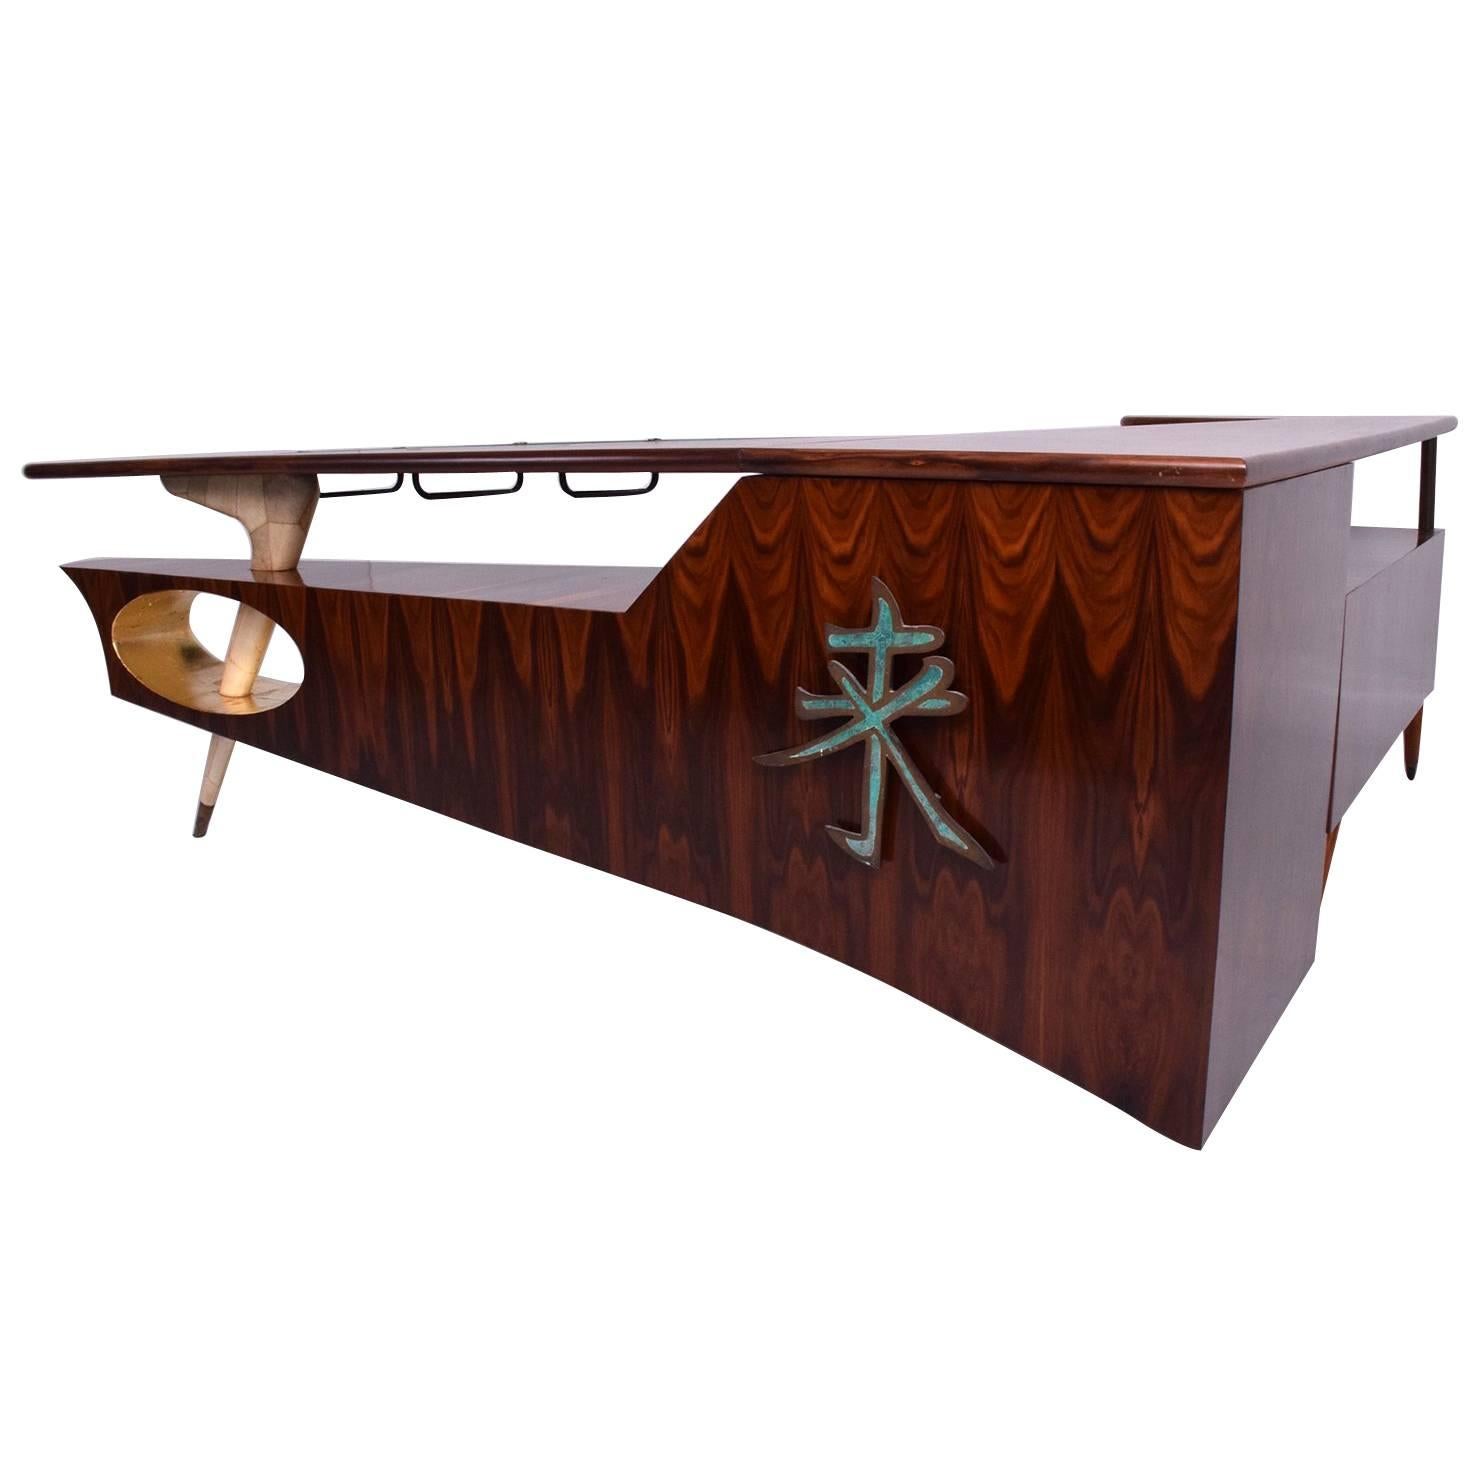 Frank Kyle Modernist Rosewood Desk/Bar with Mendoza Hardware